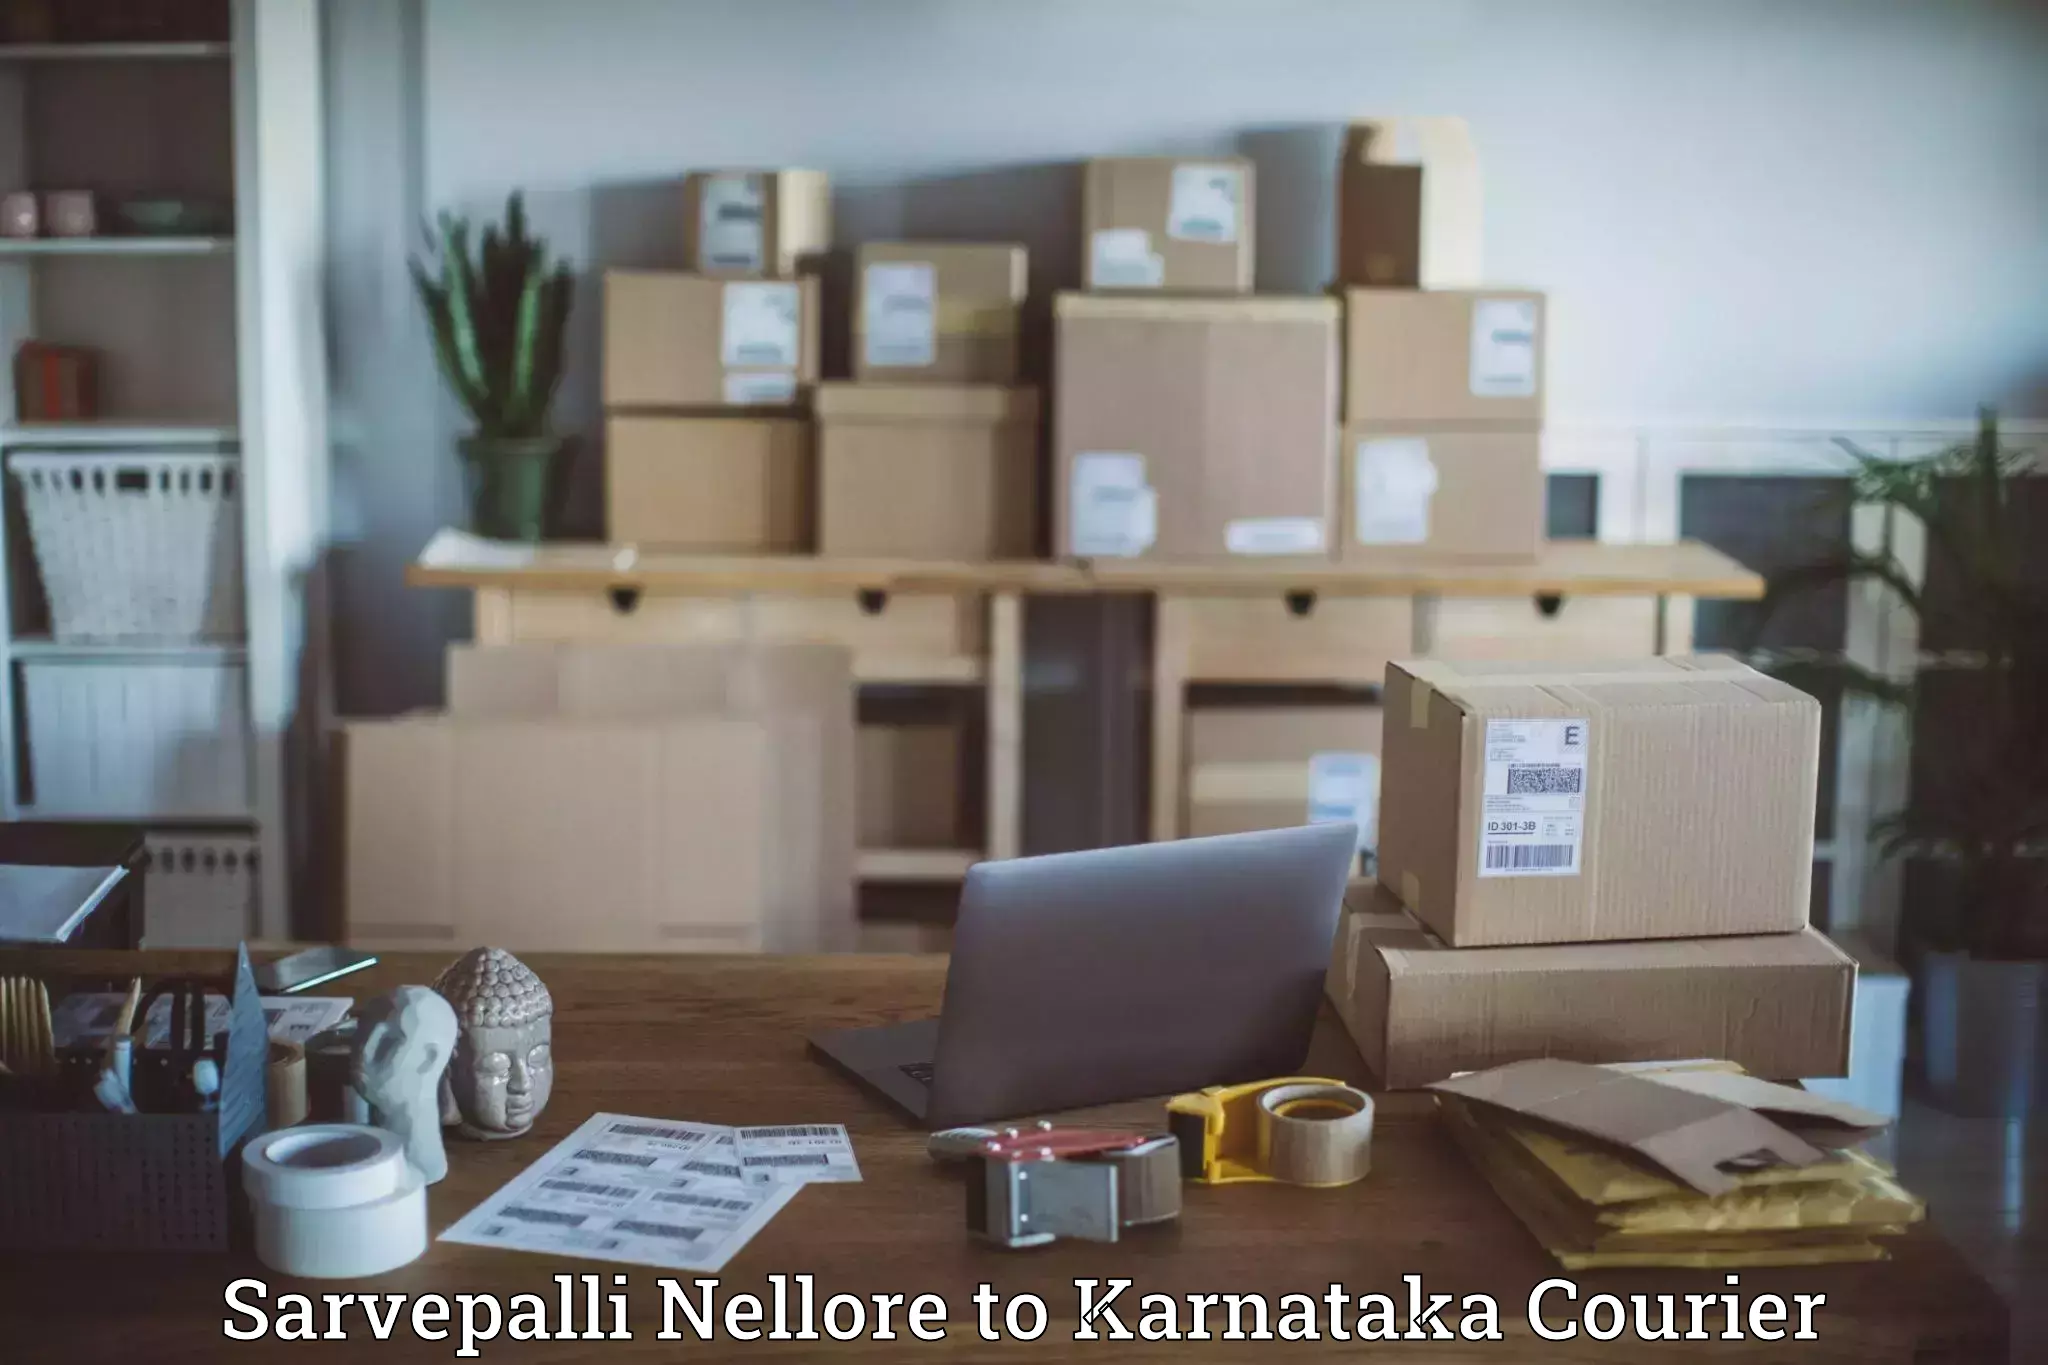 Local delivery service Sarvepalli Nellore to Karnataka